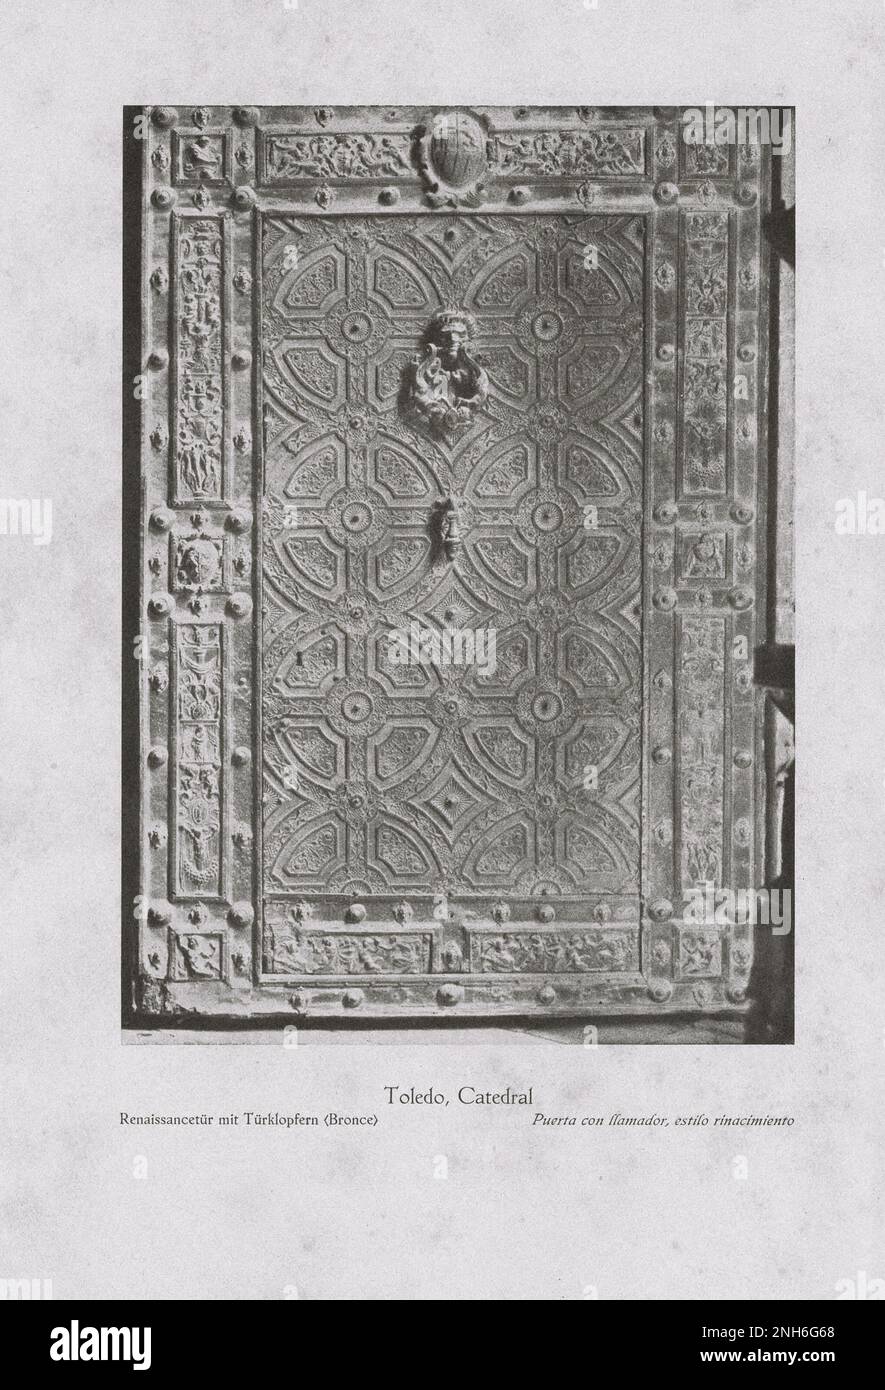 Art de la vieille Espagne. Photo ancienne de la cathédrale de Tolède. Porte Renaissance avec knockers de porte (bronze) Banque D'Images